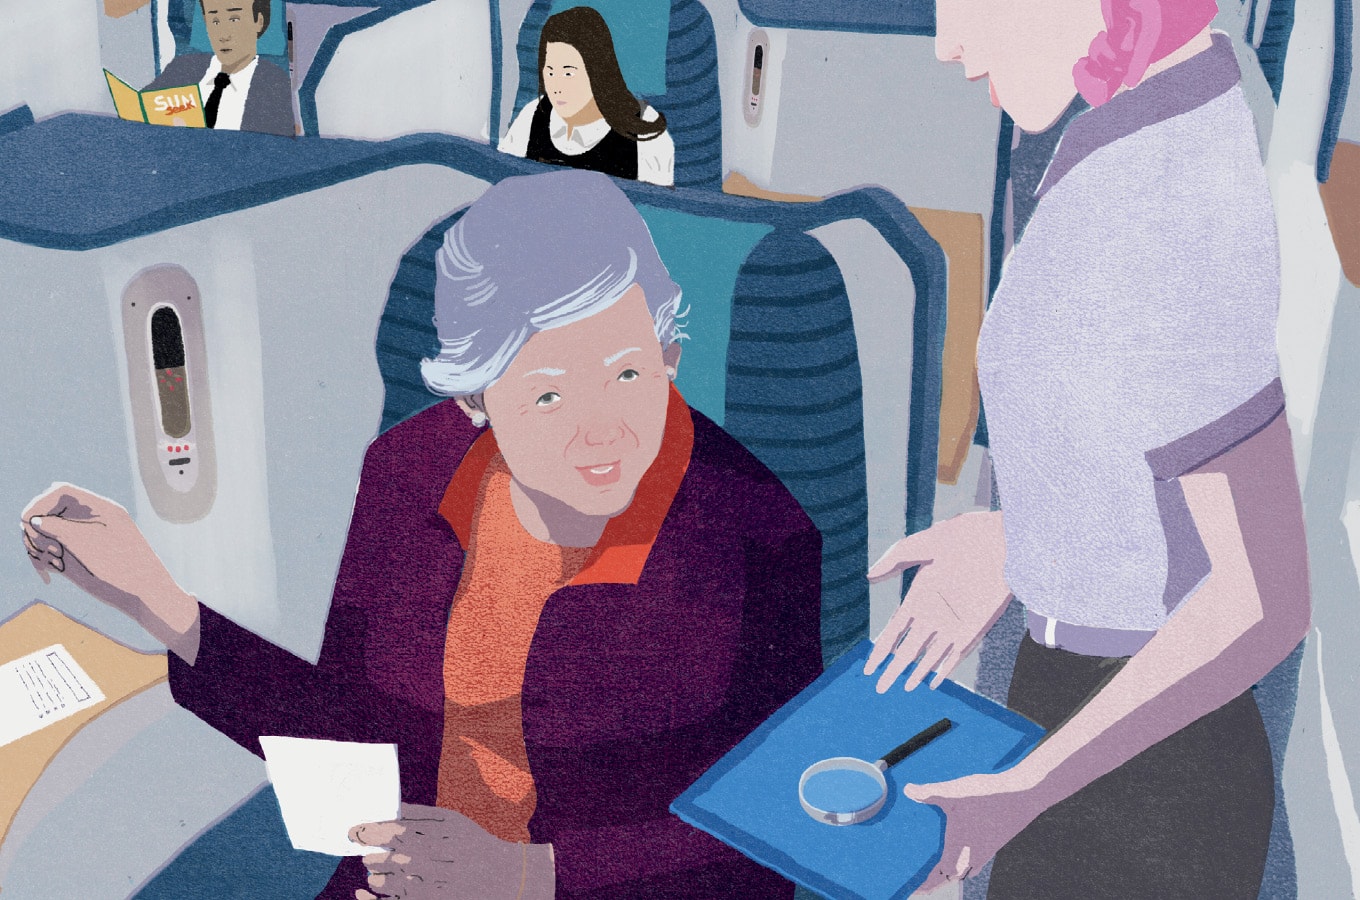 n el avión, la asistente de vuelo ofrece una lupa para ayudar a una mujer que tiene dificultades para leer.